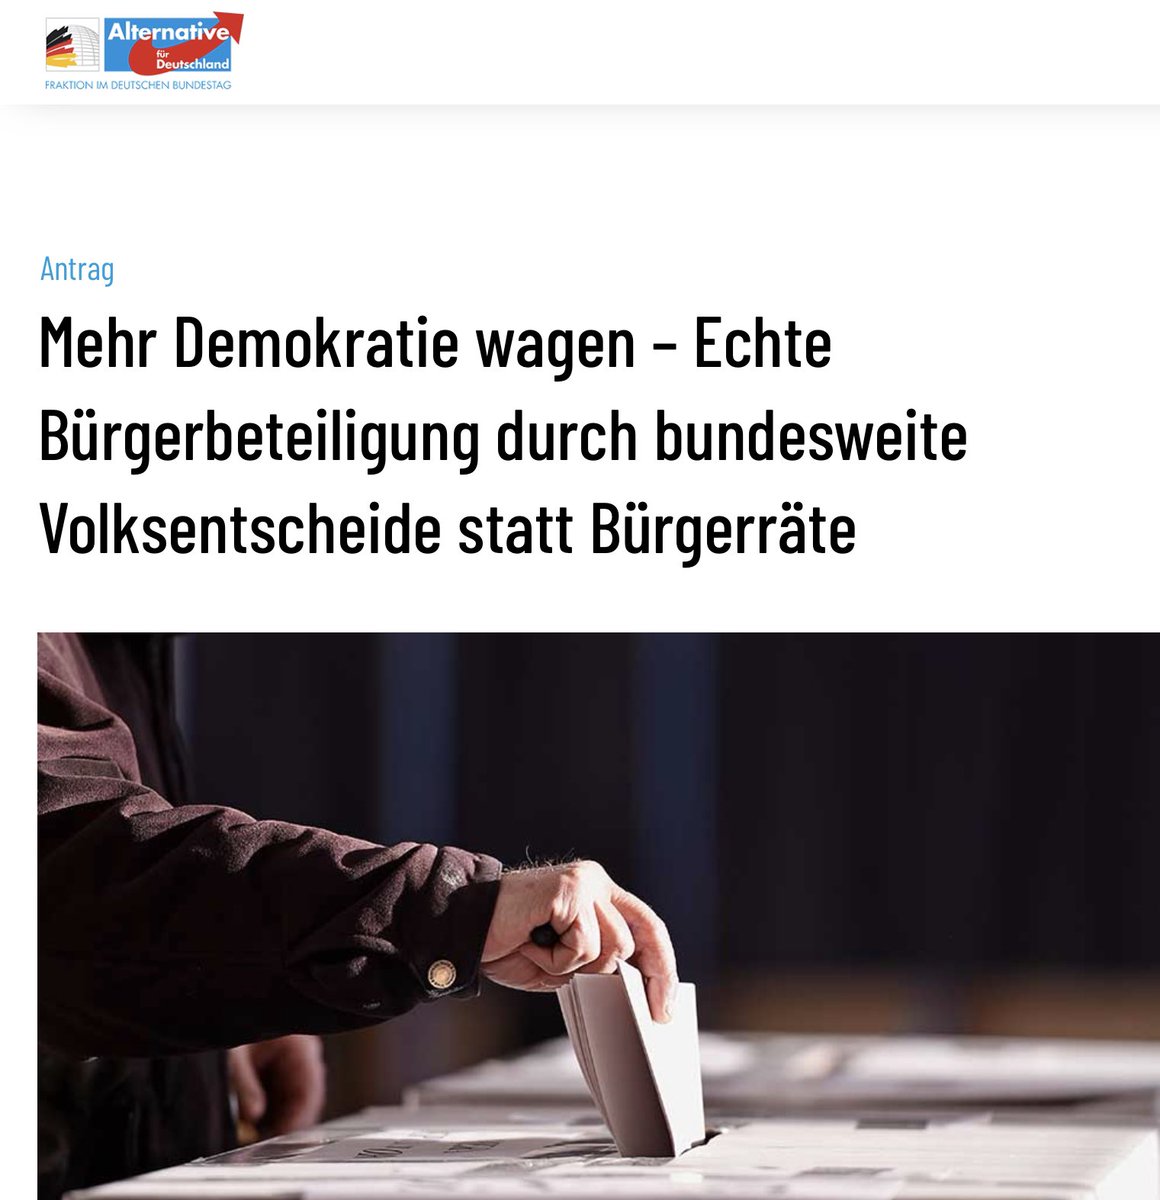 ‼️BUNDESWEITE VOLKSENTSCHEIDE‼️ DAS WILL DIE AFD Ihr Antrag wurde natürlich im Deutschen Bundestag von den angeblich so demokratischen Fraktionen abgelehnt. Davor fürchten sie sich nämlich. Das Volk soll draußen gehalten werden.